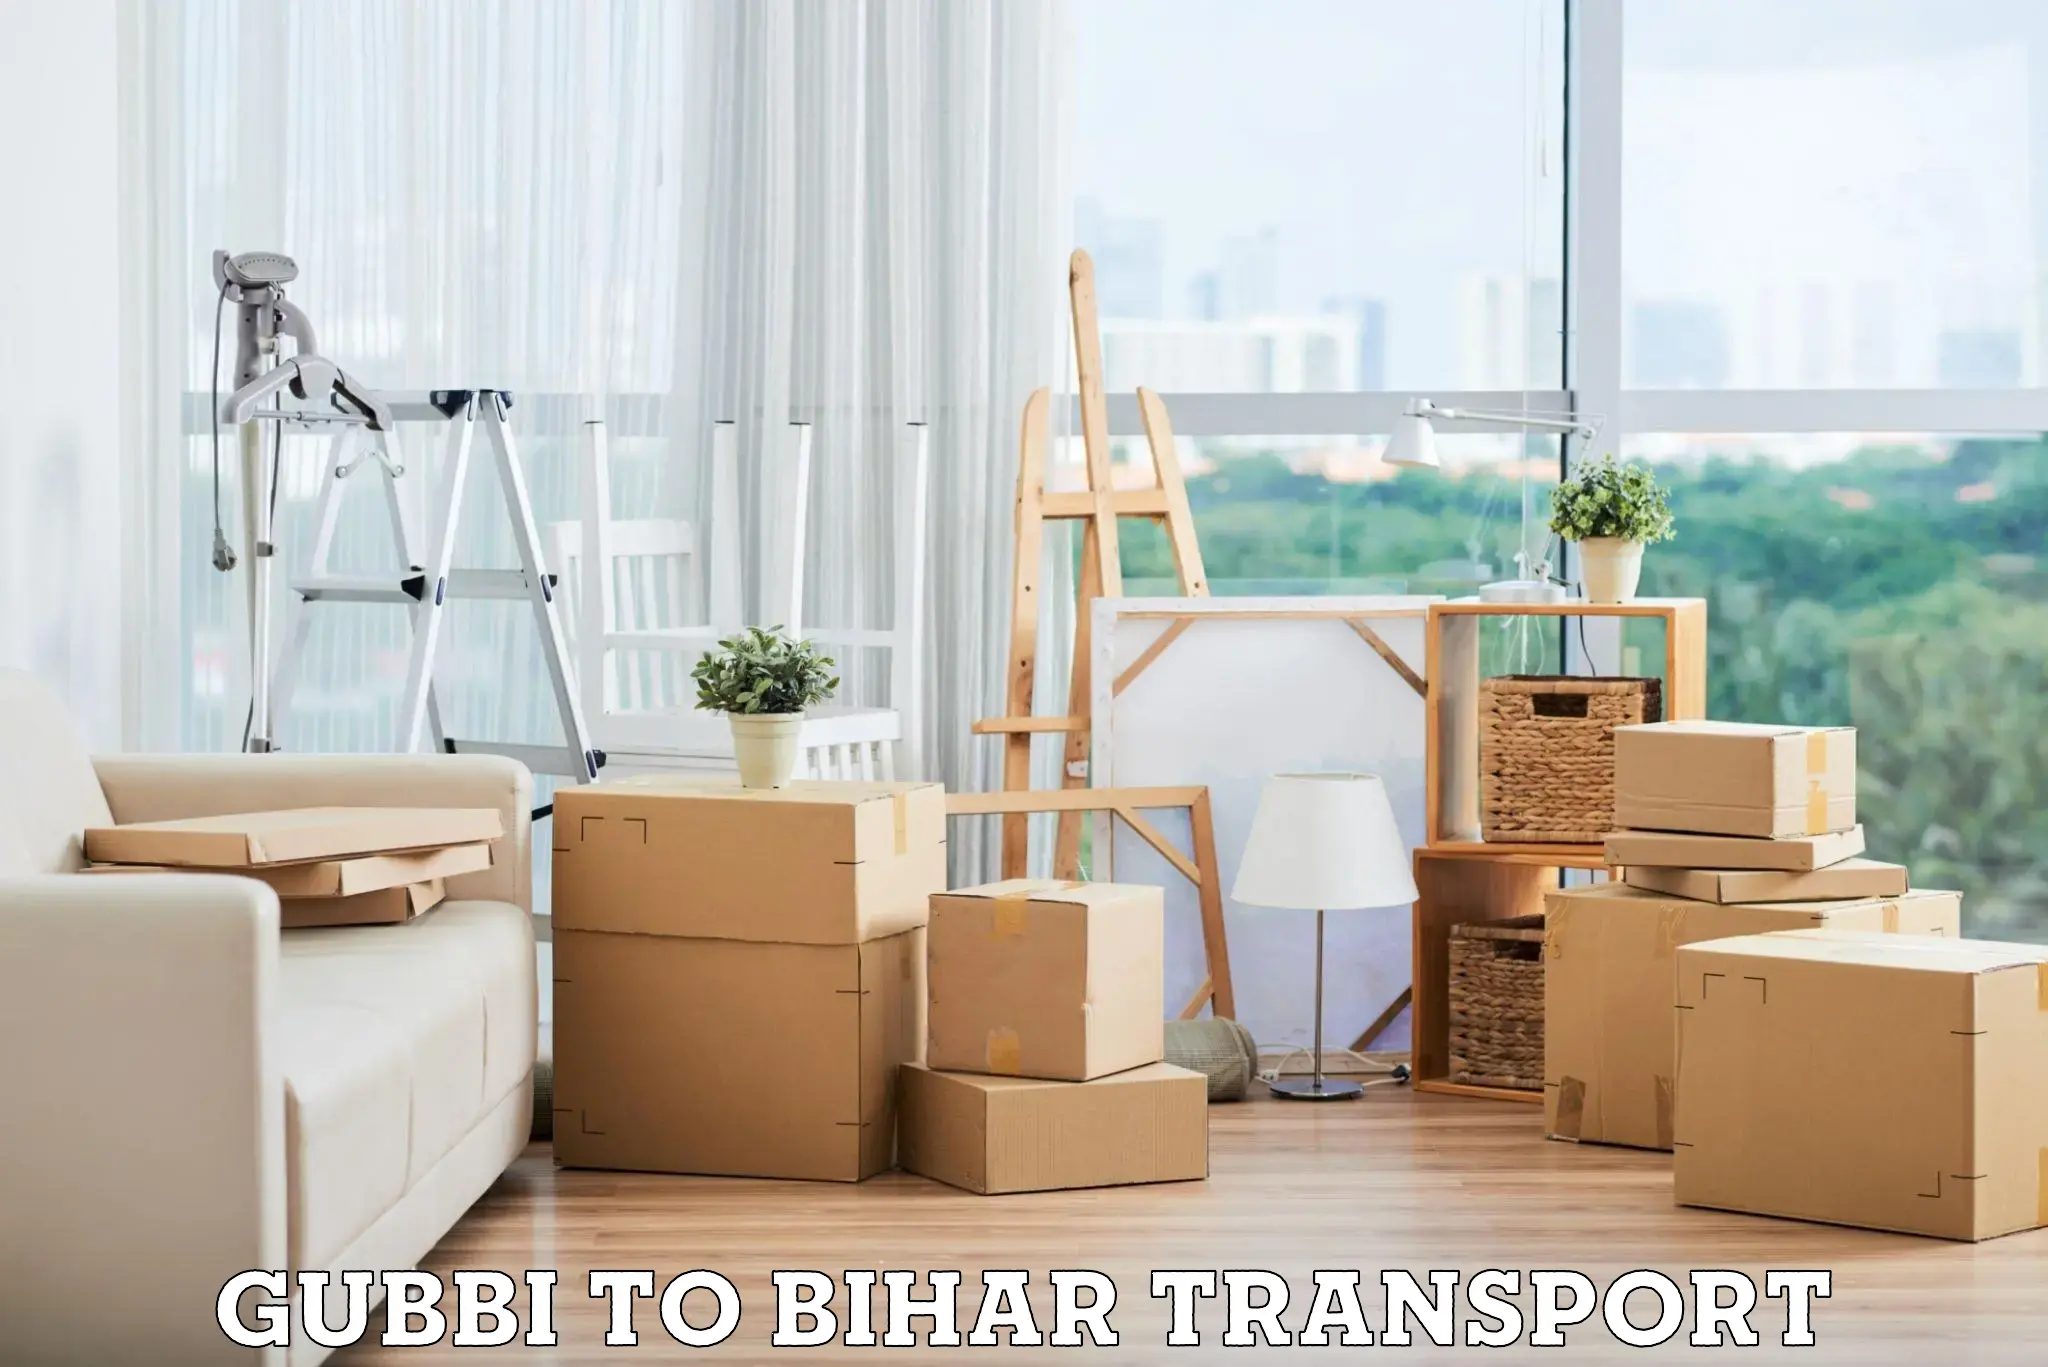 Luggage transport services Gubbi to Tekari